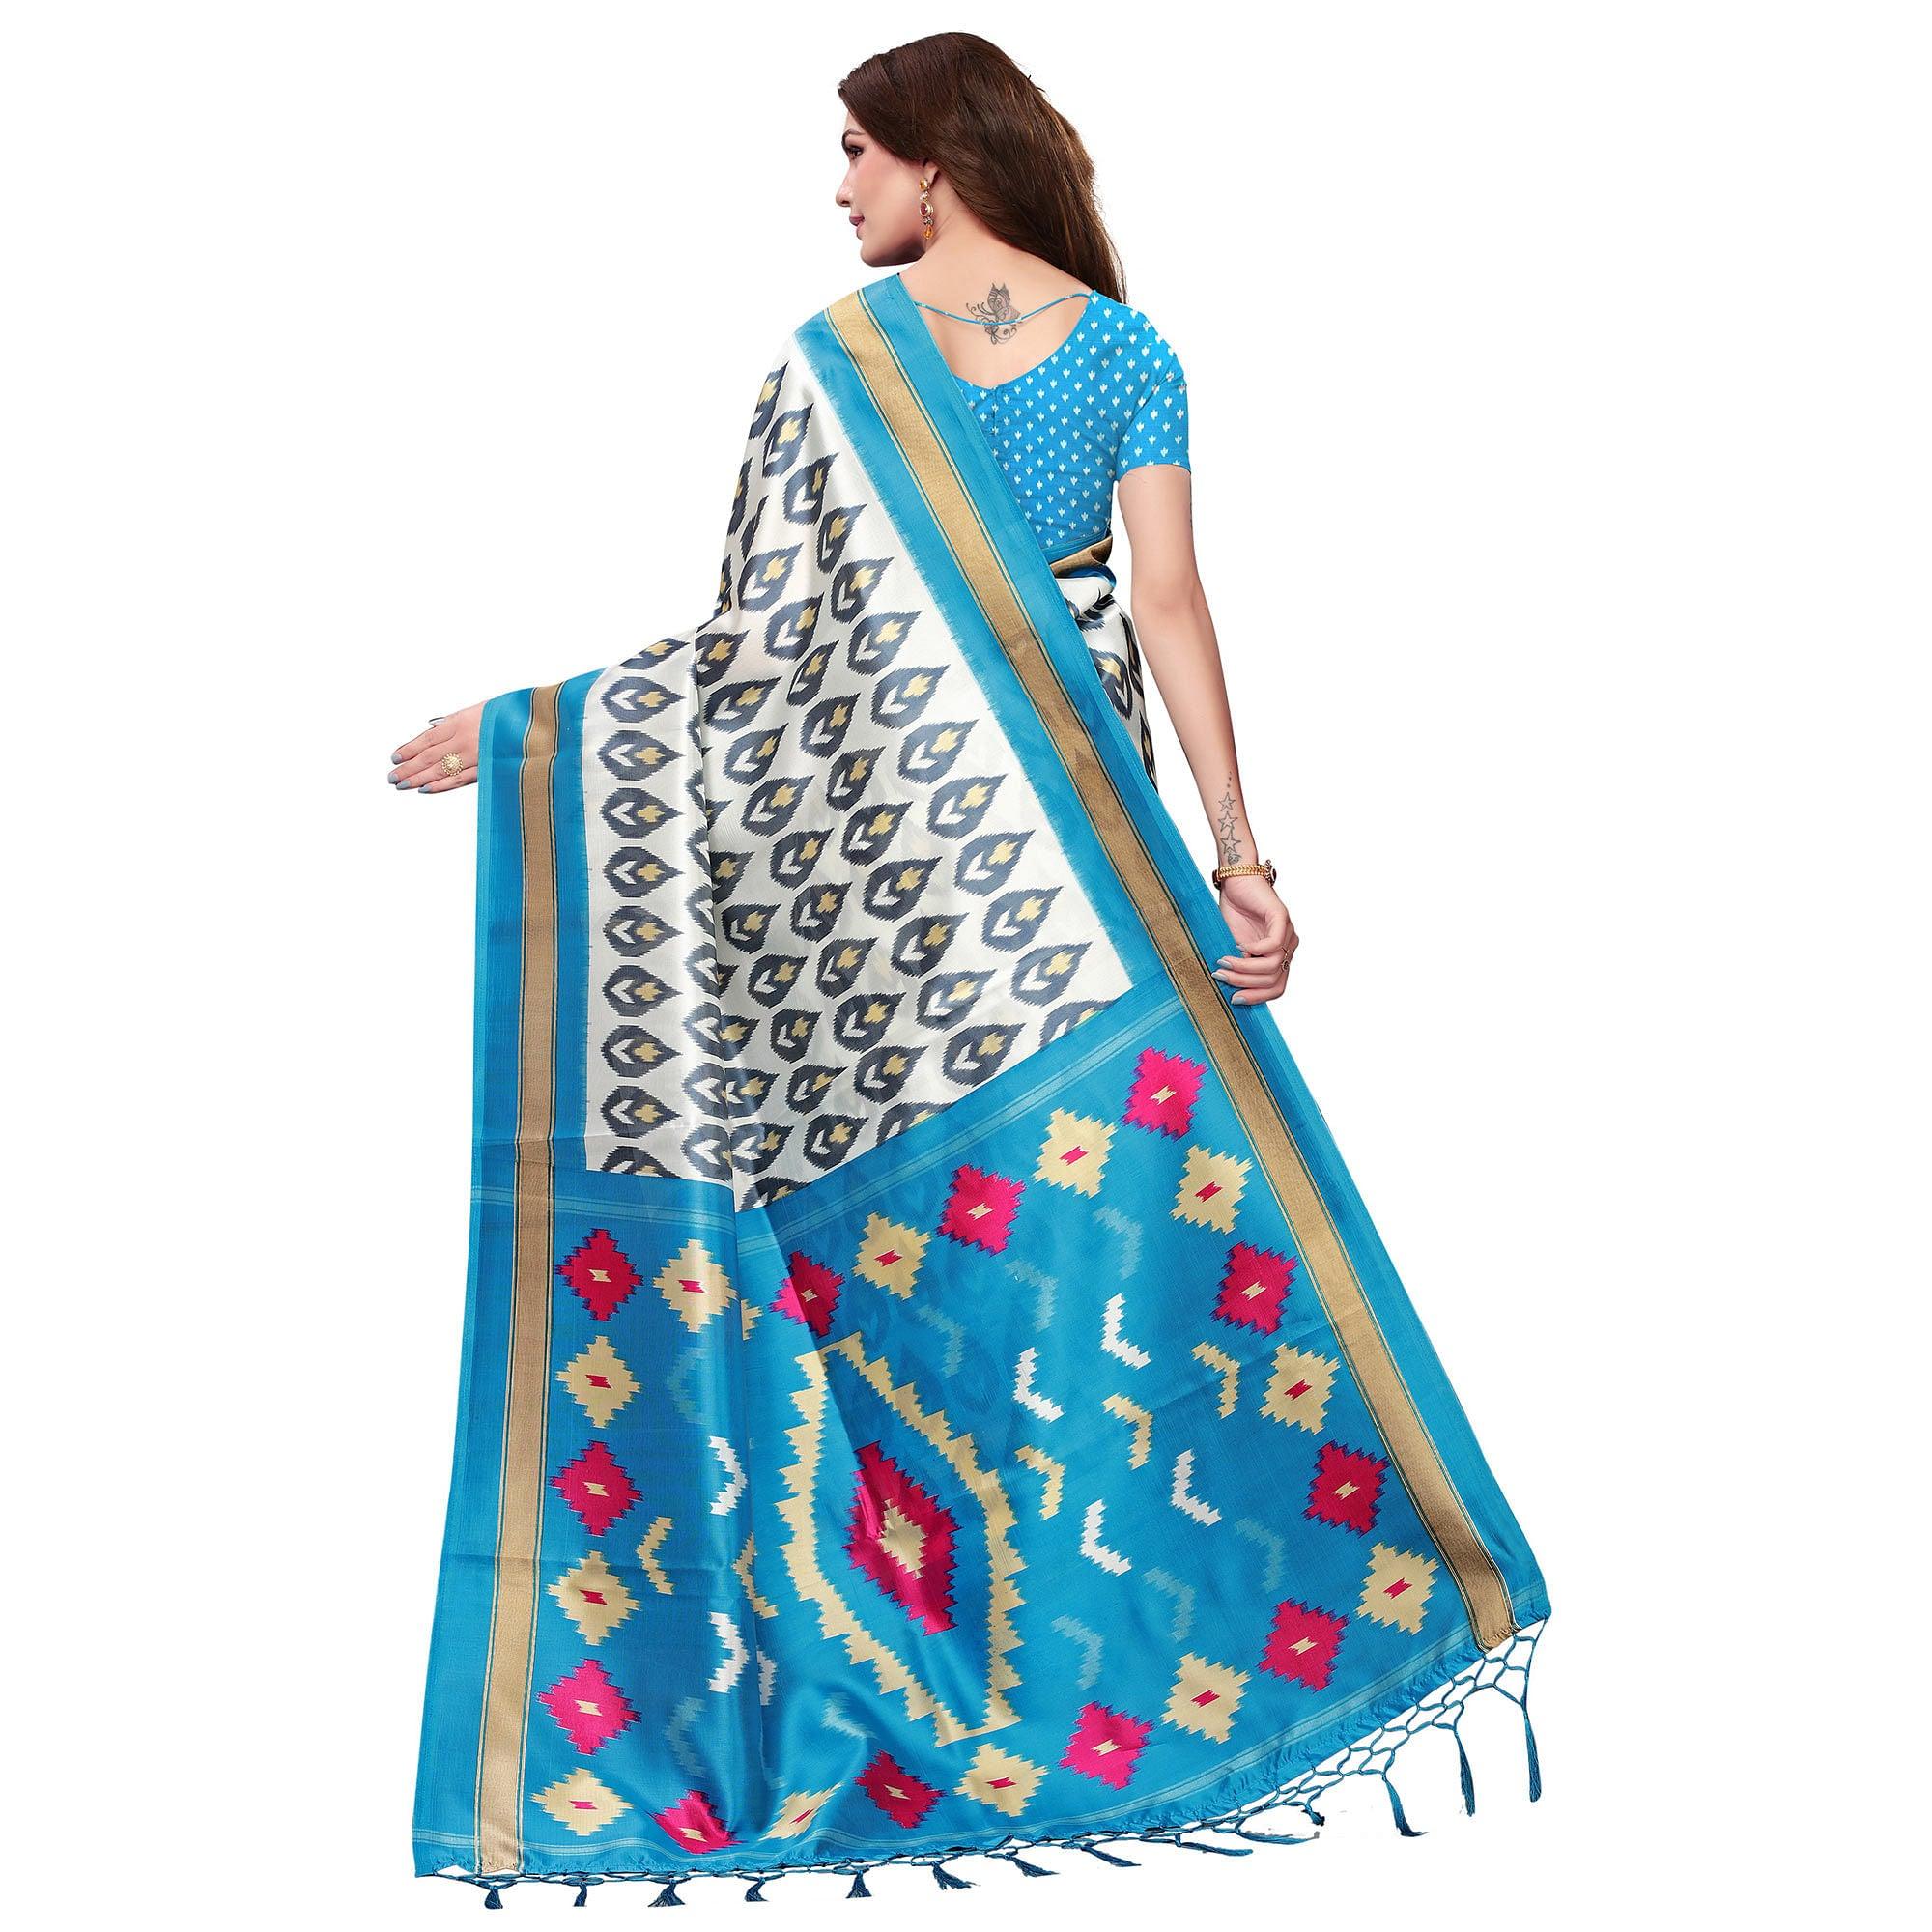 Preferable White-Sky Blue Colored Festive Wear Mysore Silk Saree With Tassels - Peachmode